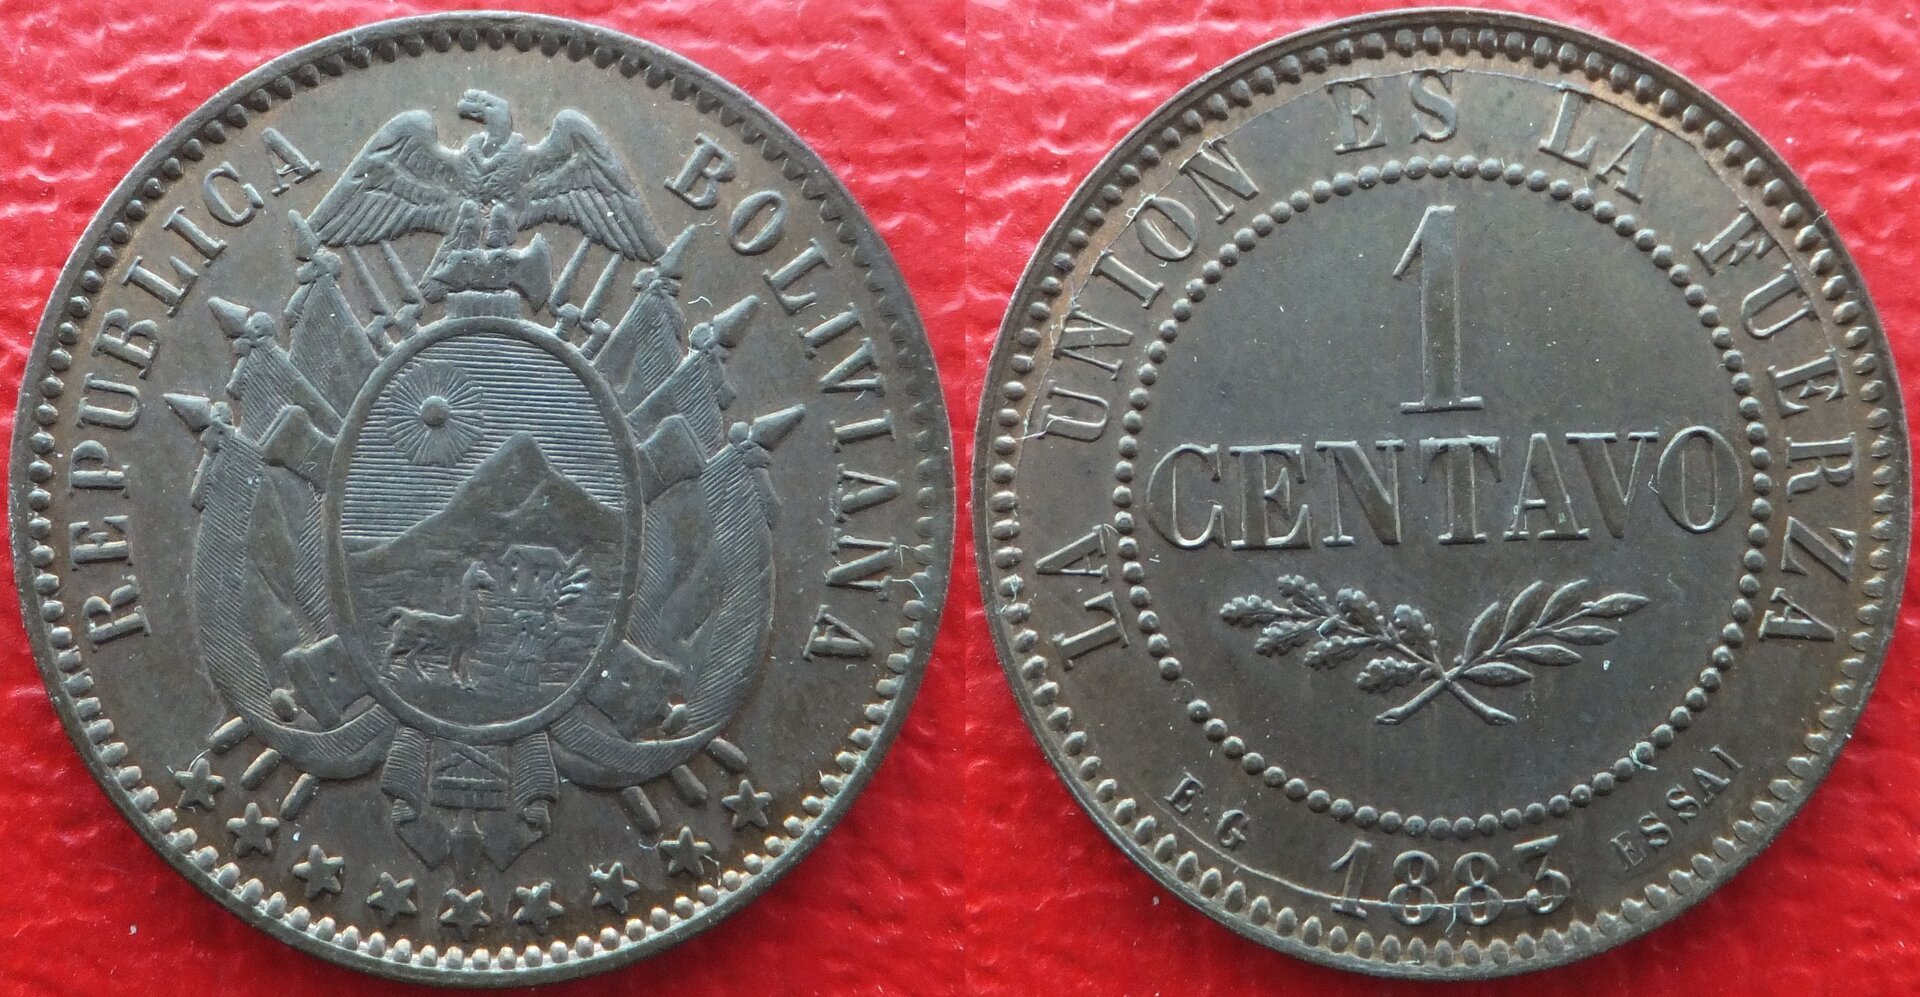 Bolivia 1 centavo 1883 EG (essai) (3).jpg